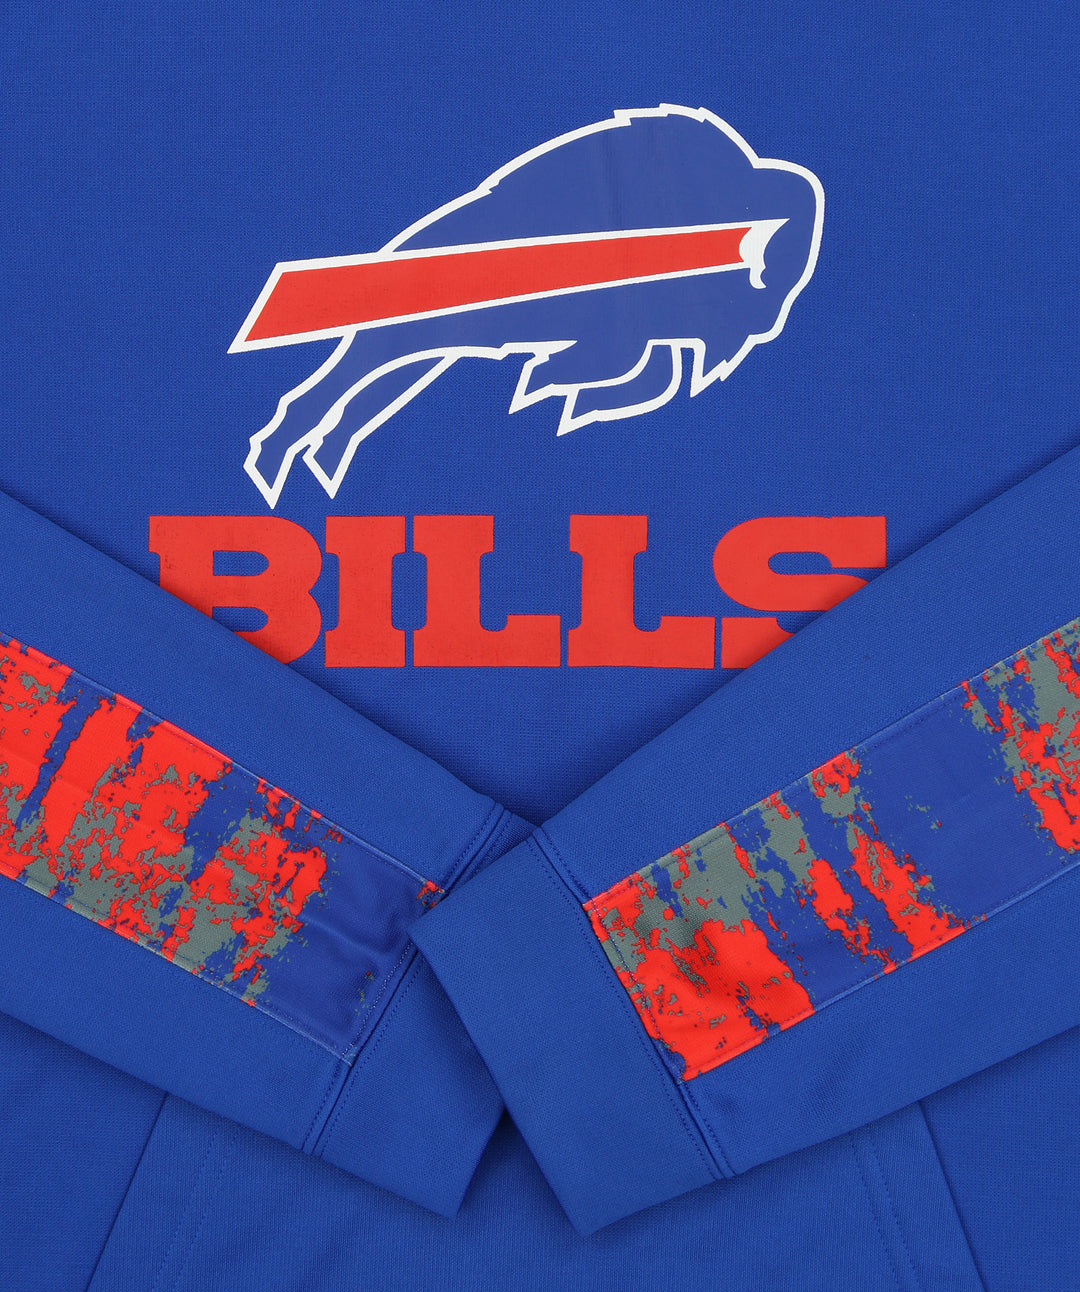 Zubaz NFL Men's Buffalo Bills Performance Hoodie w/ Oxide Sleeves